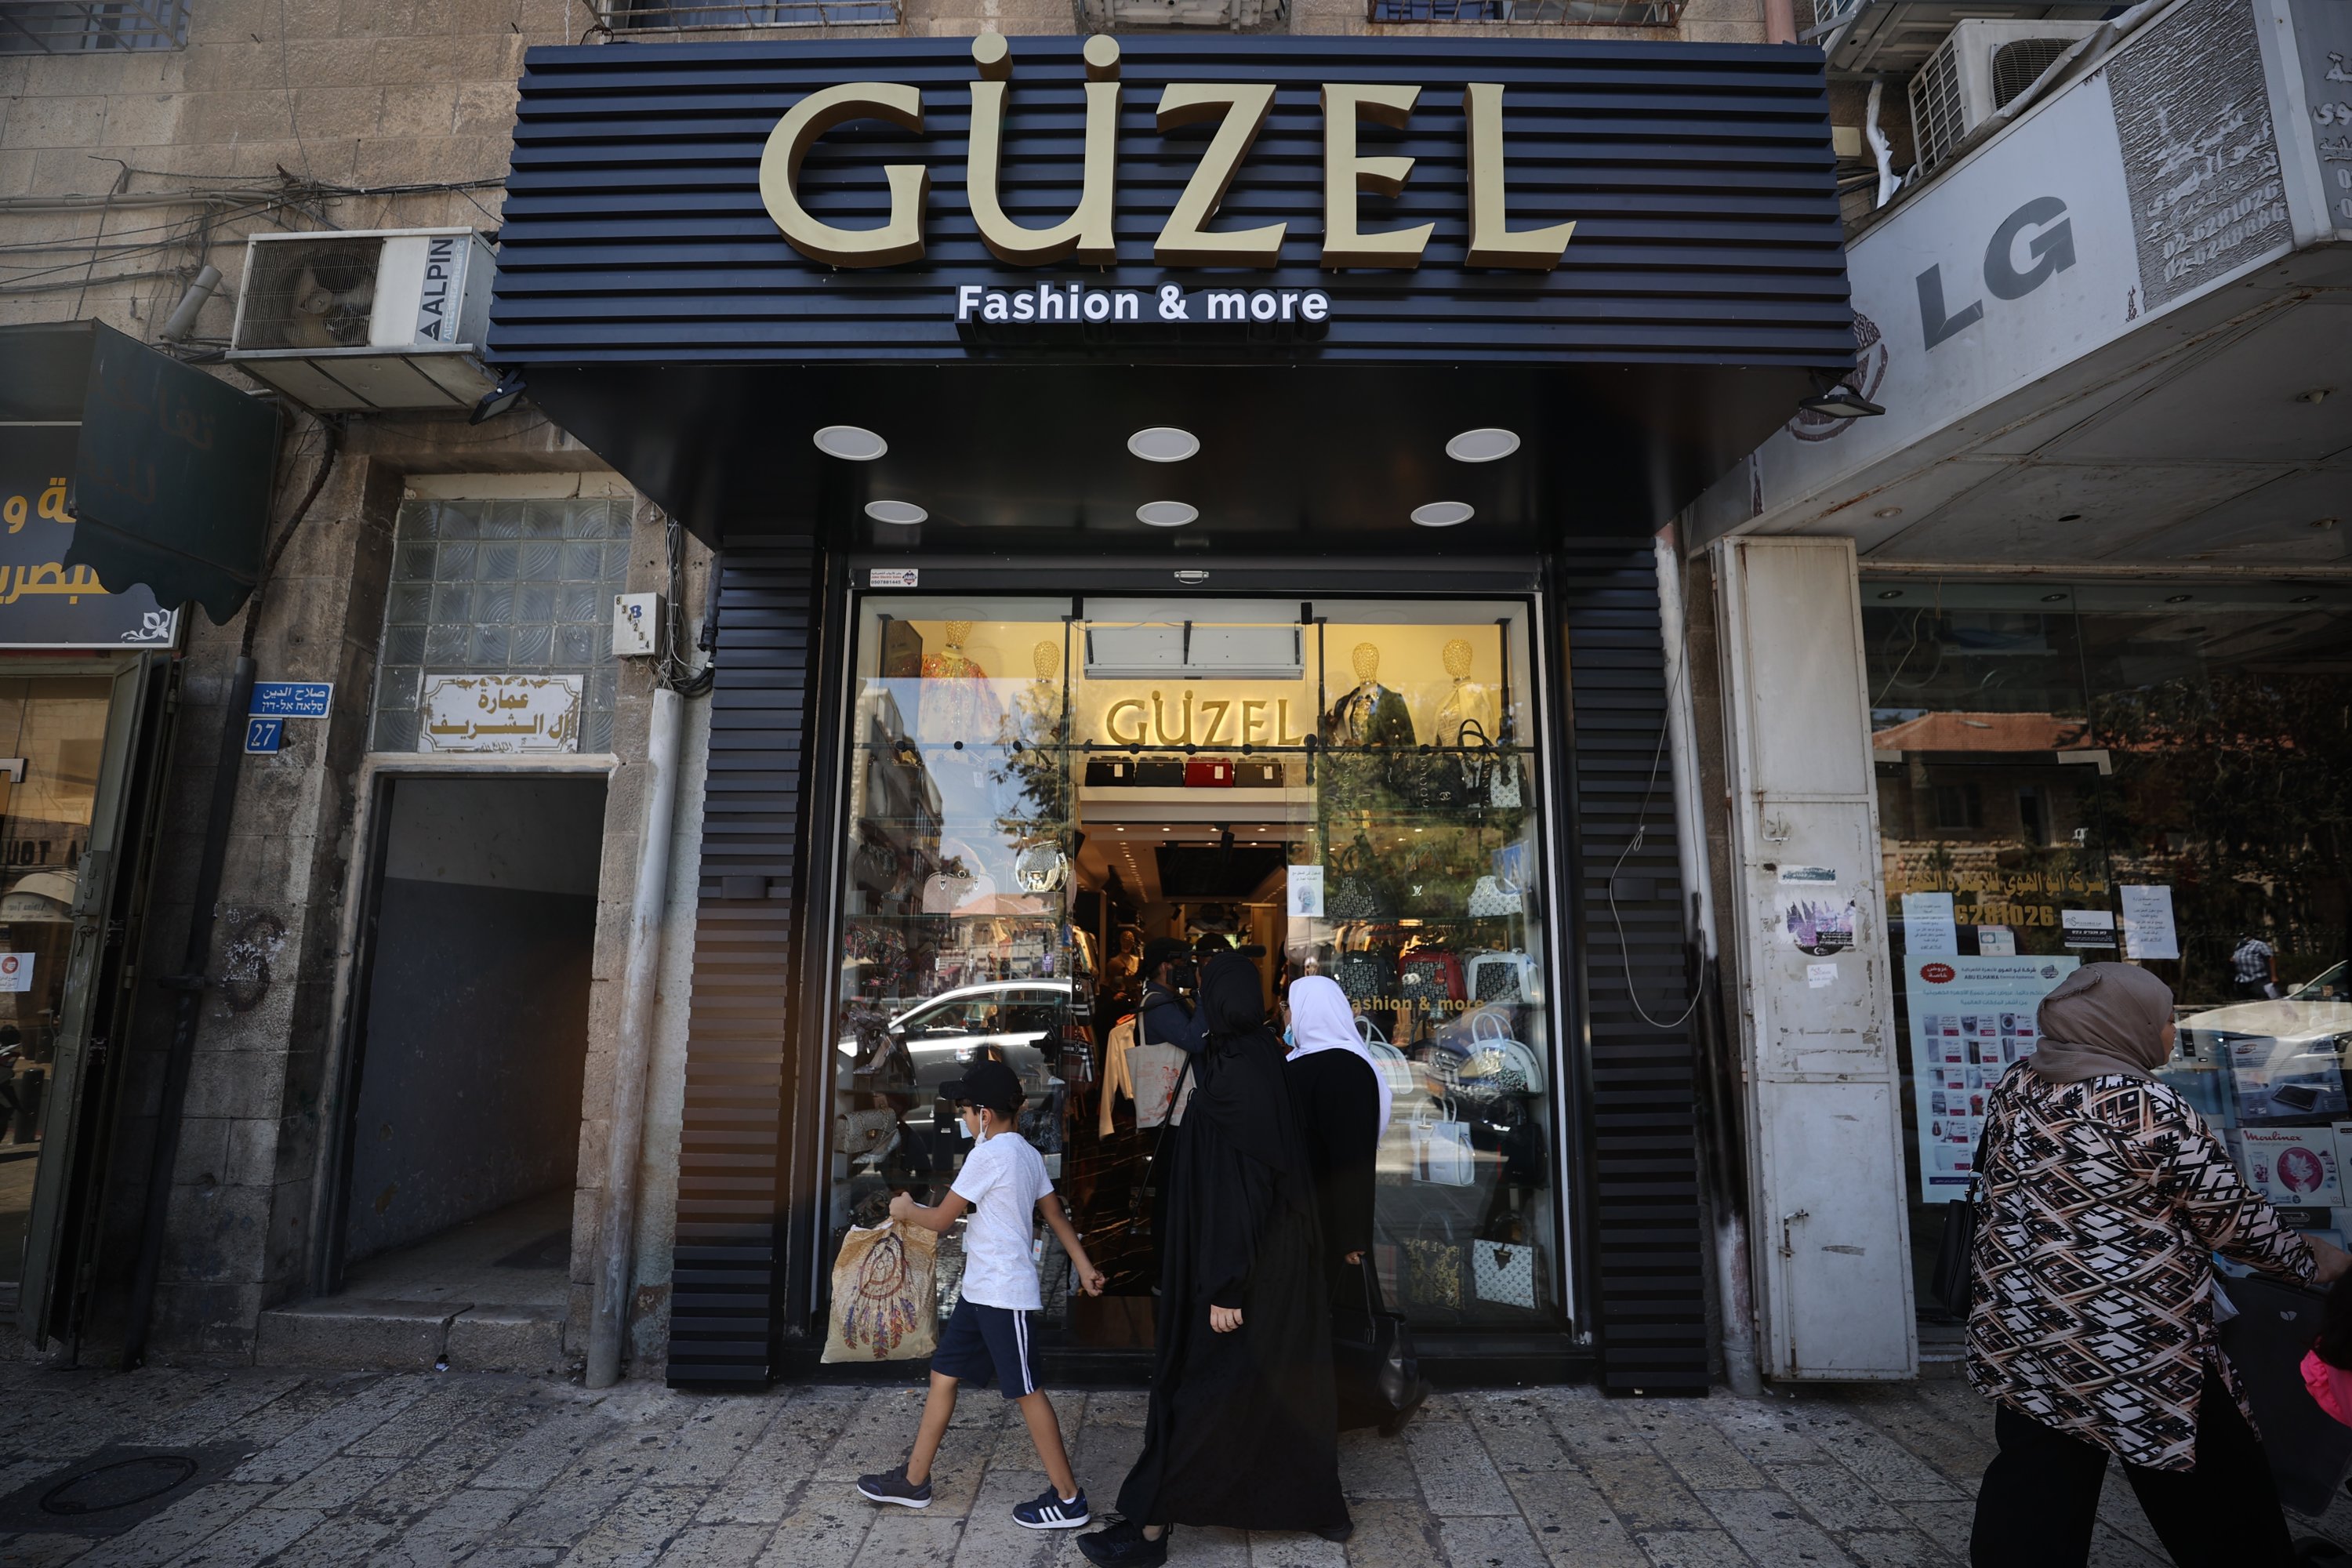 Turkish names adorn Jerusalem streets amid widespread trend